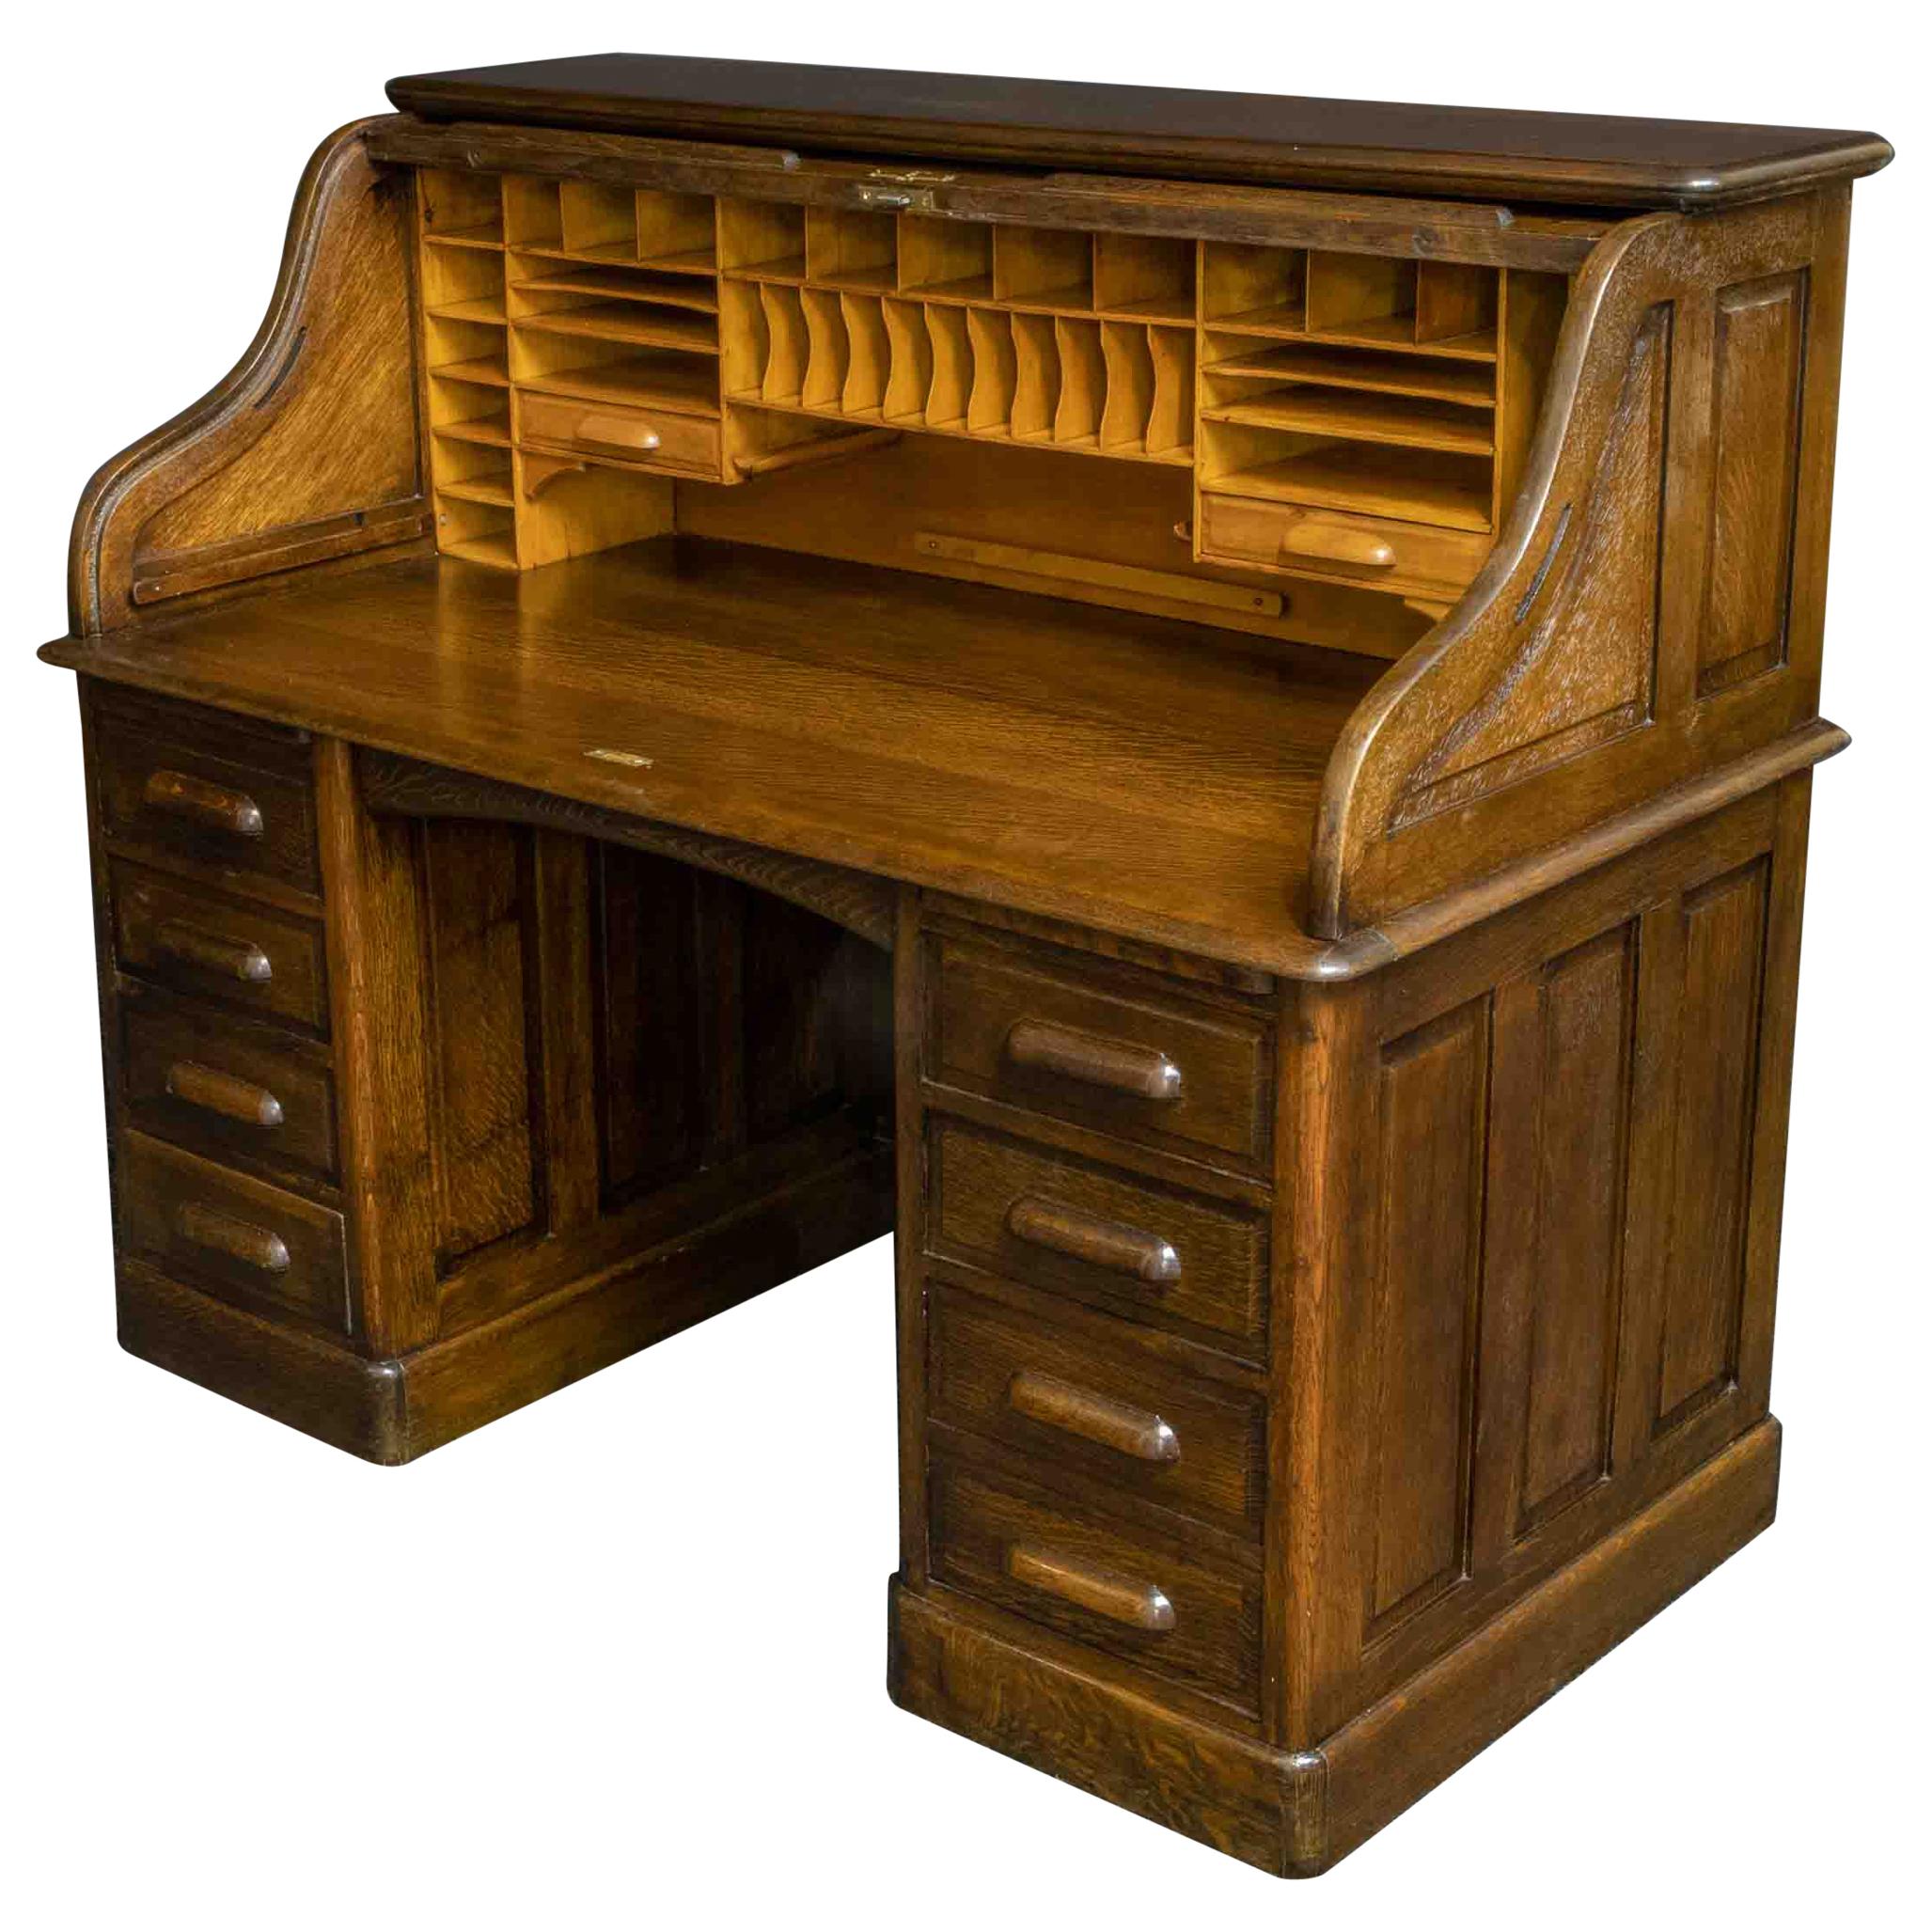 Edwardian Oak Roll Top Desk For Sale At 1Stdibs | Roll Top Desk For Sale, Rolltop  Desk, Antique Roll Top Desk